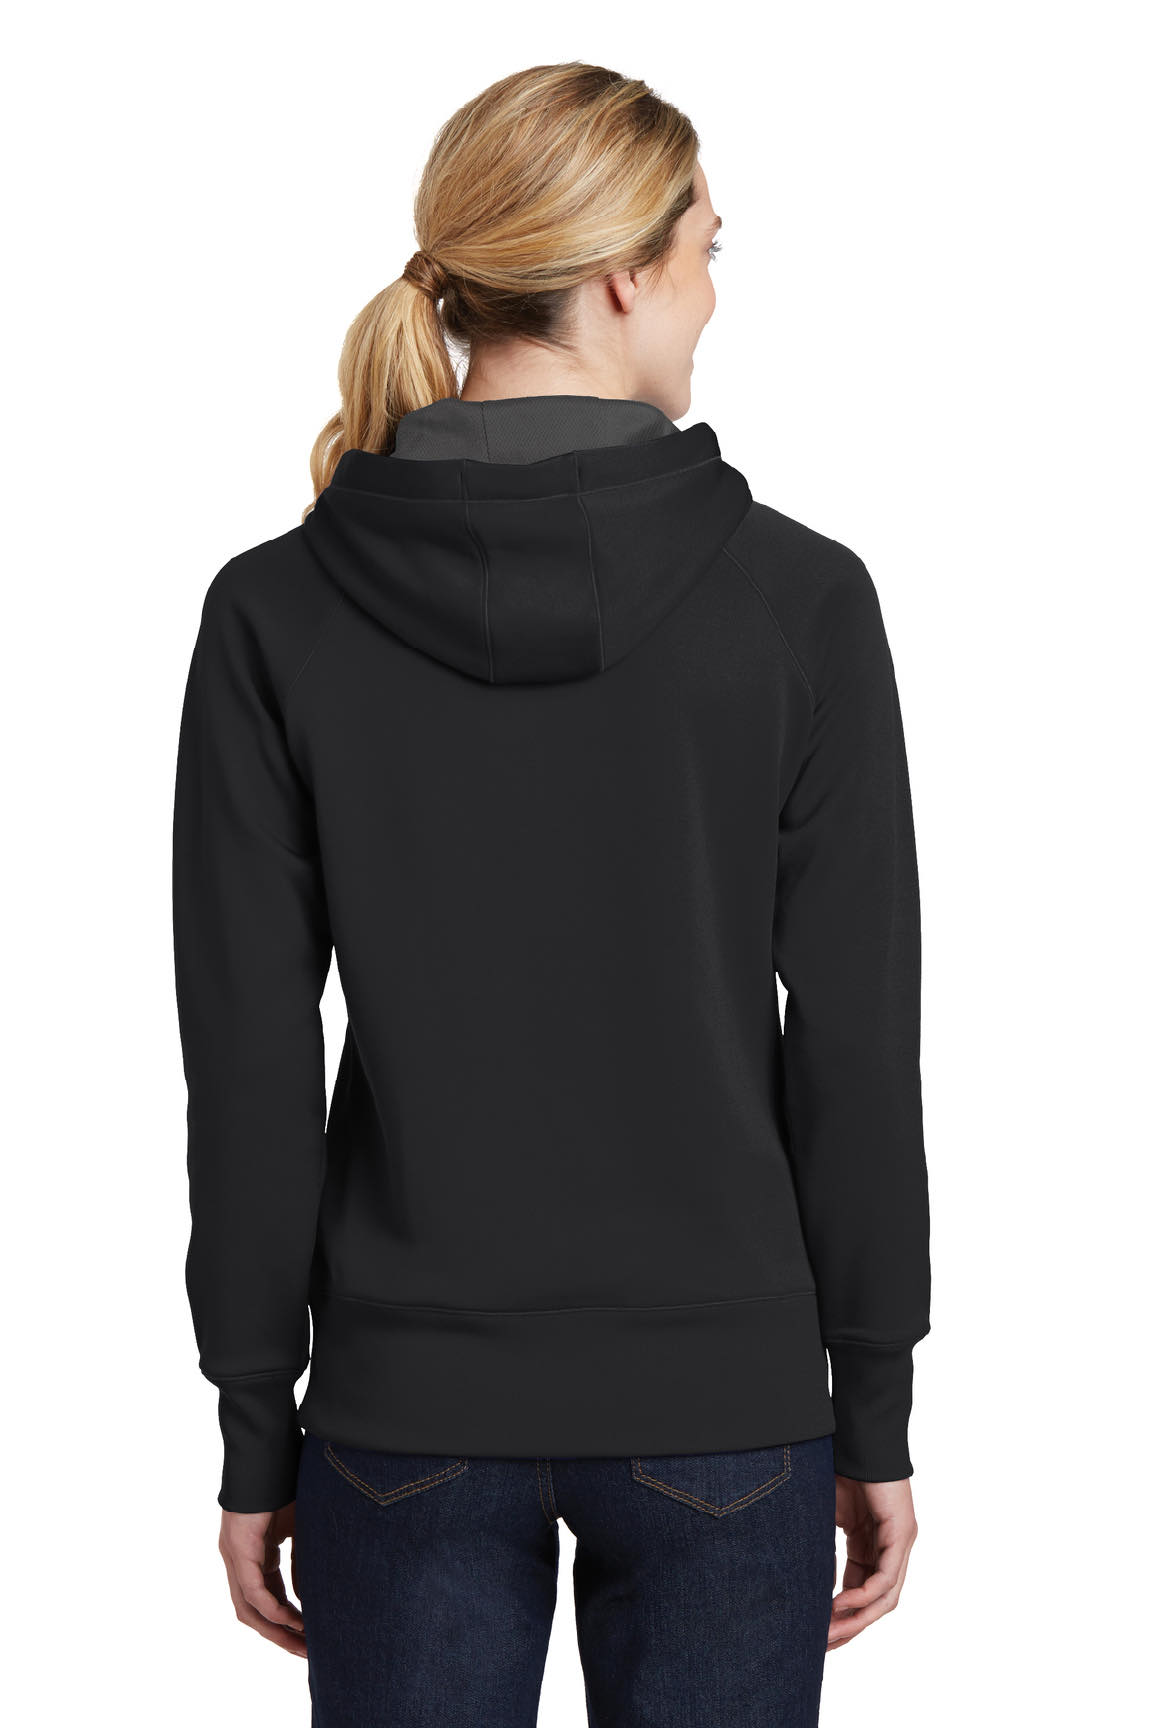 Women’s Sport-Tek Tech Fleece Hooded Sweatshirt | Double R Ranch